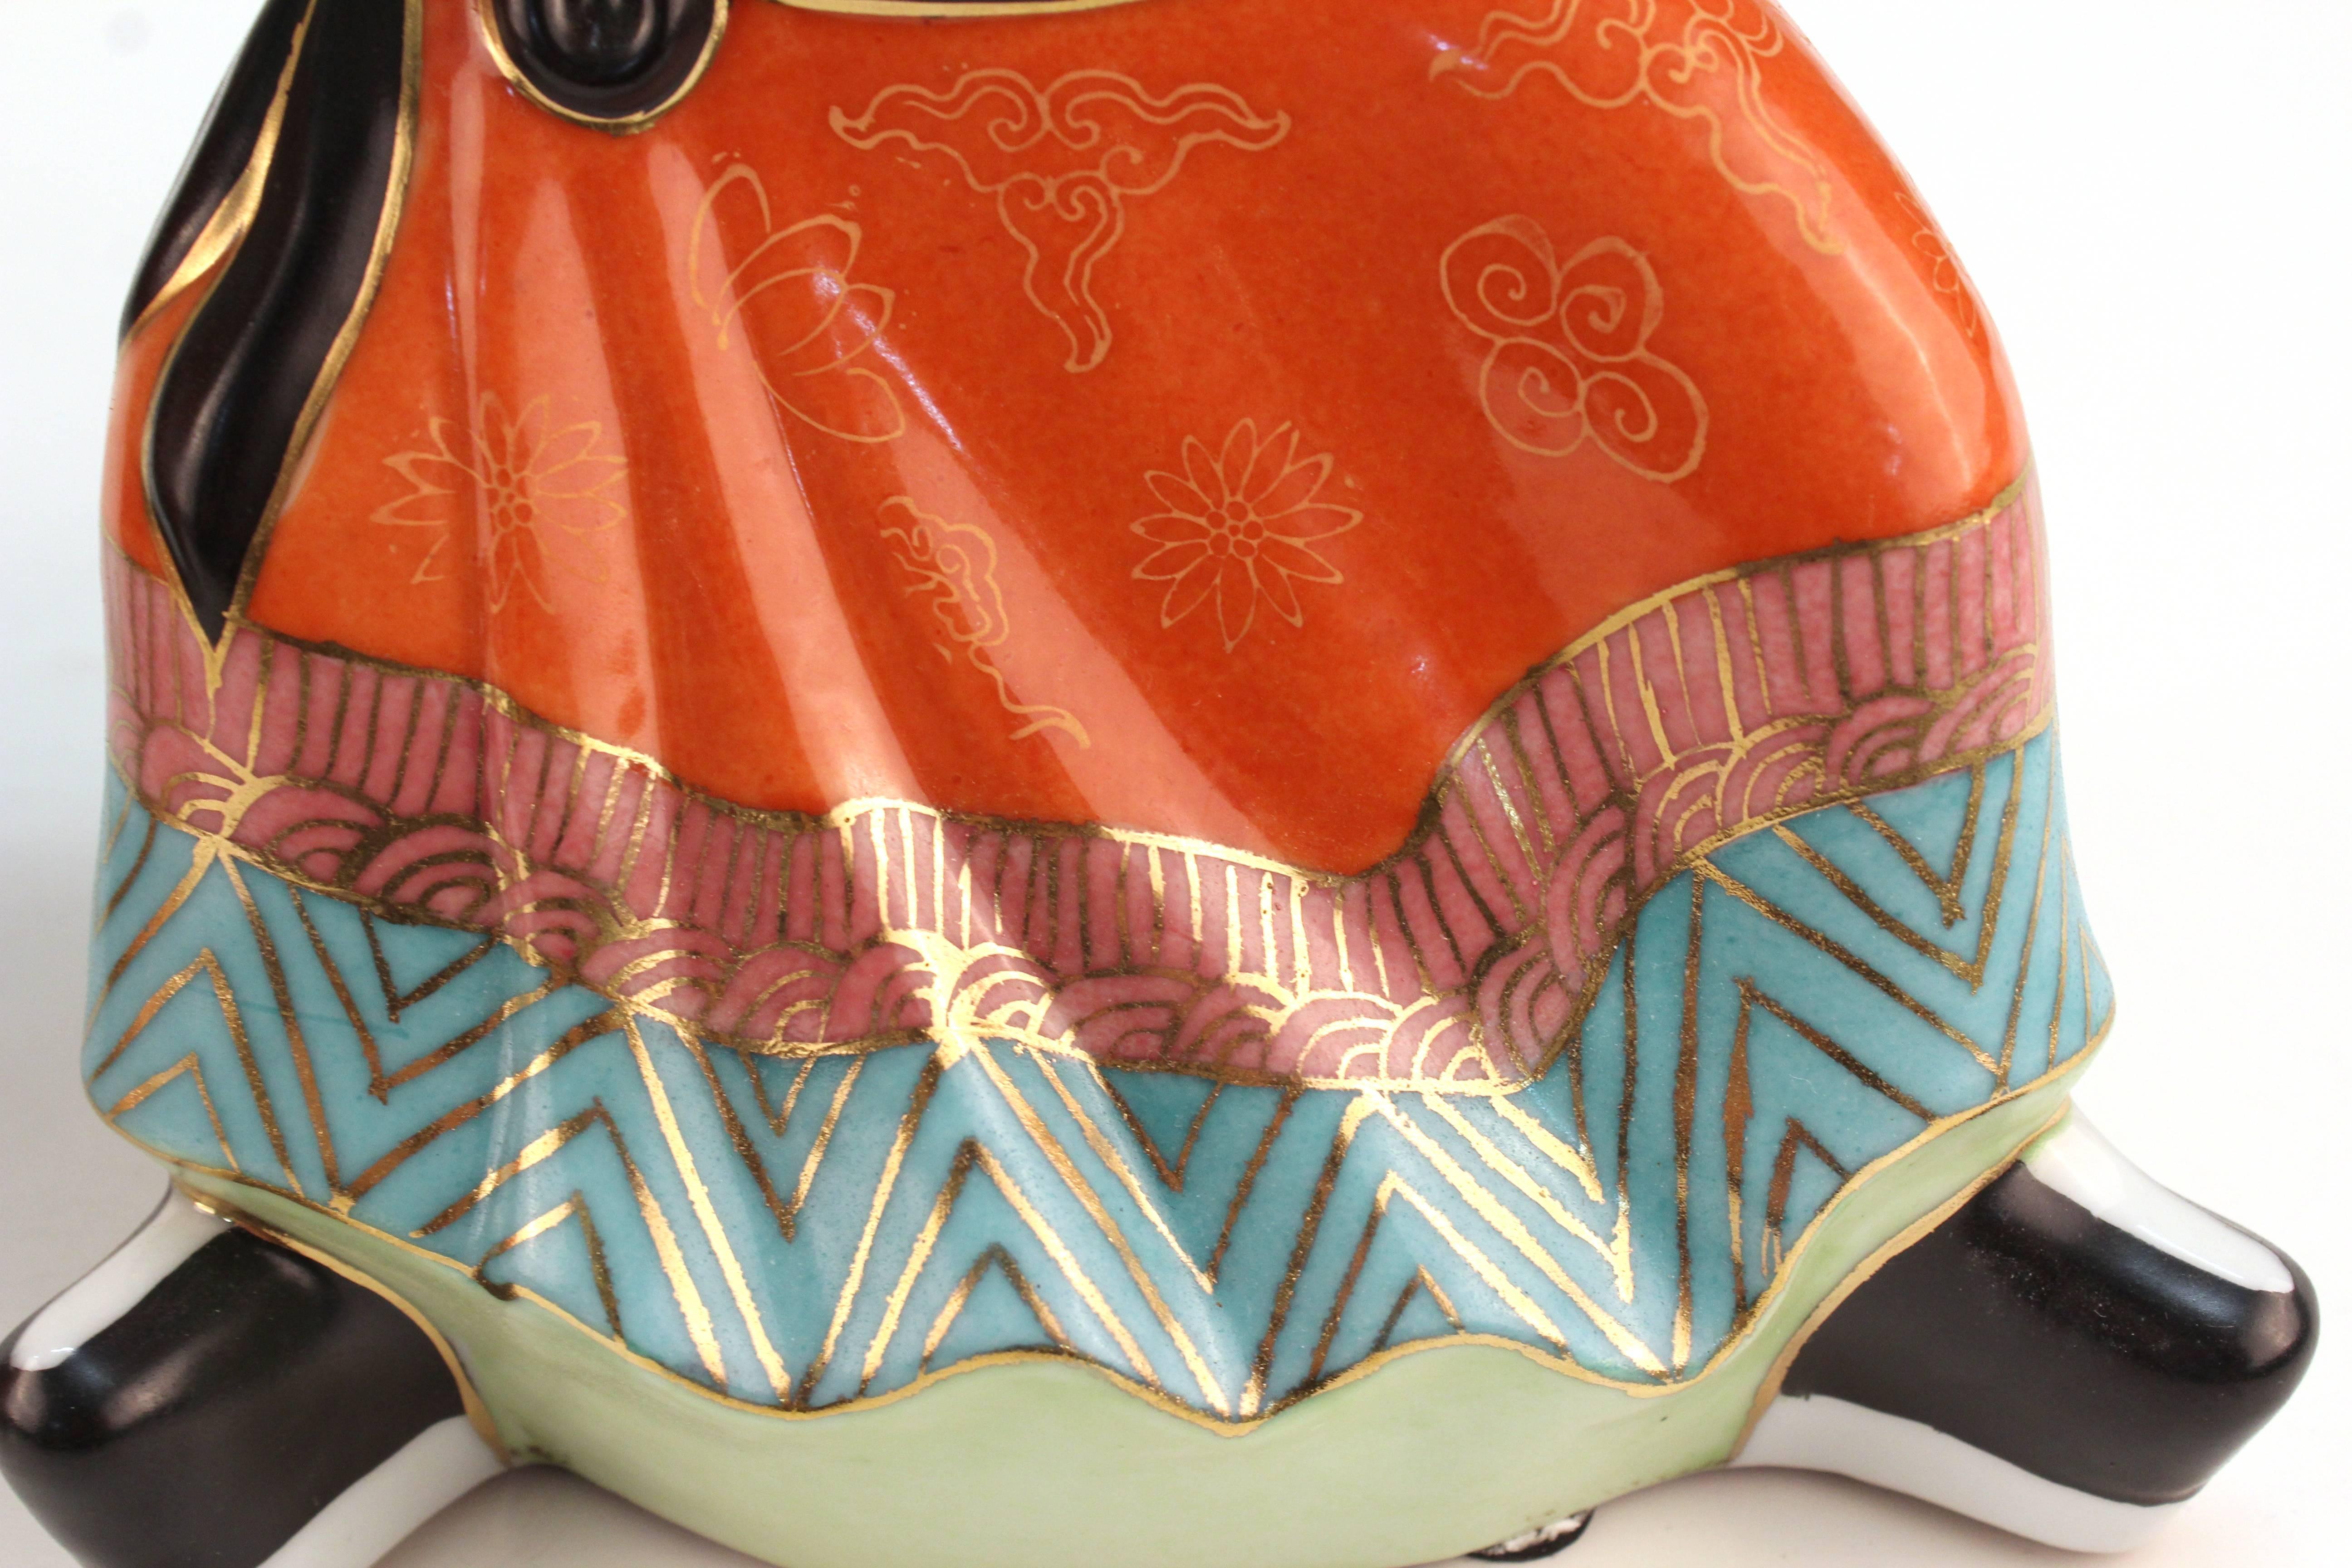 Gumps Ceramic Chinoiserie Figures 3